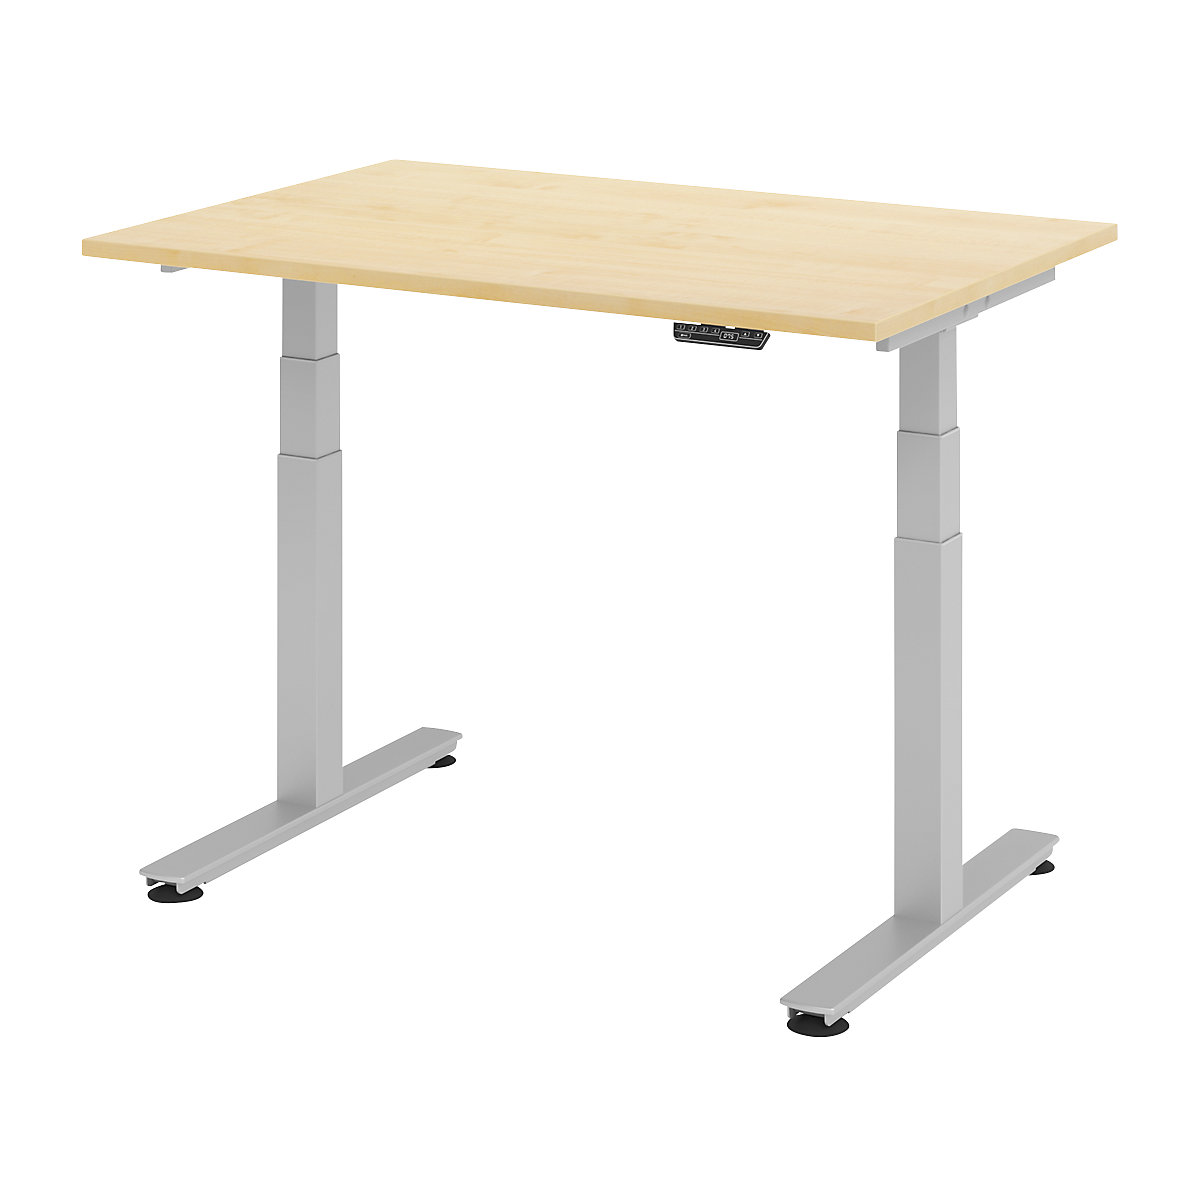 Sta-bureautafel, elektrisch in hoogte verstelbaar UPLINER-2.0